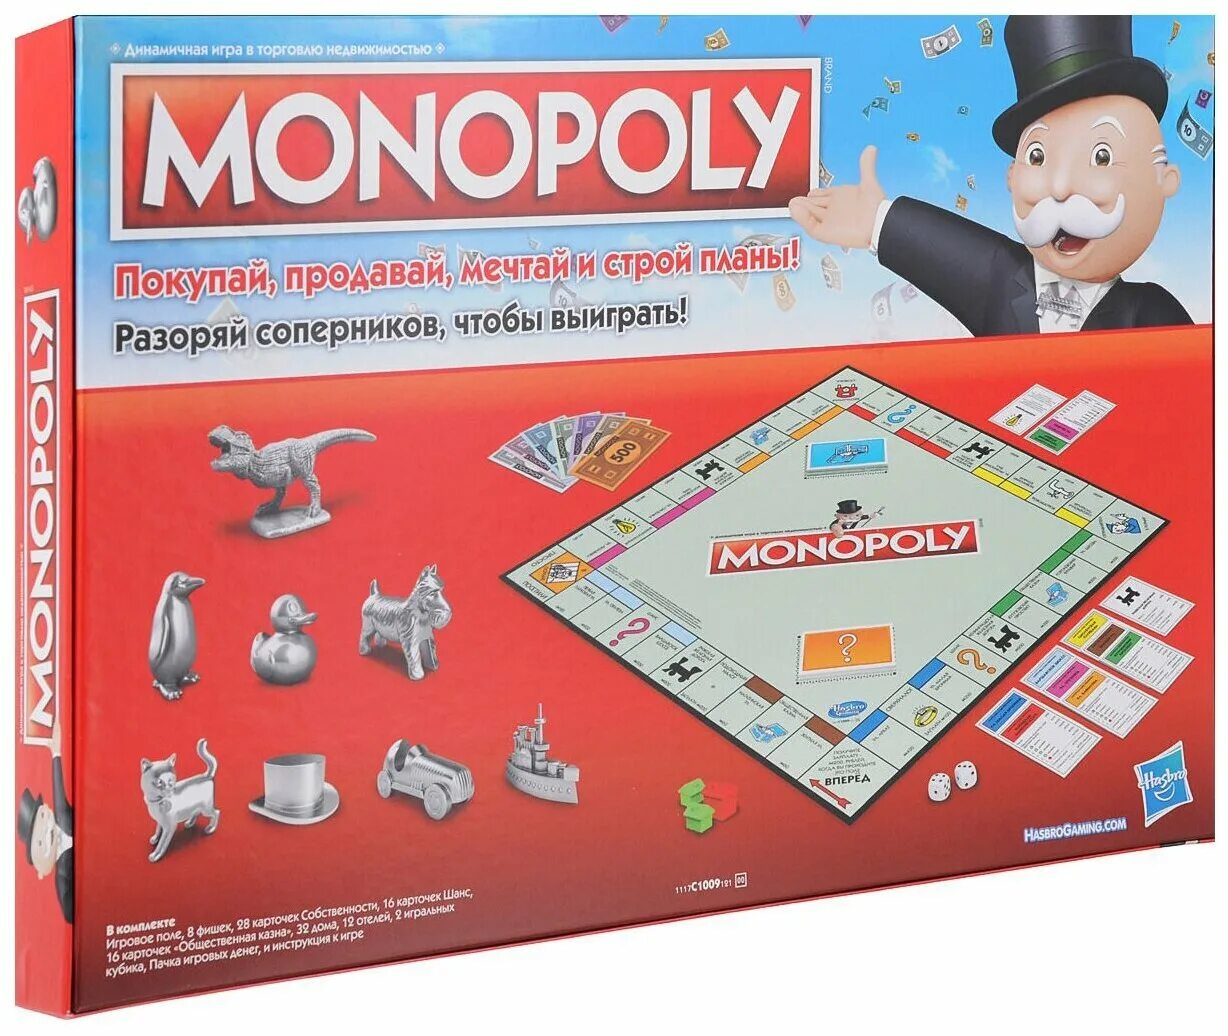 Экономическая игра монополия. Настольная игра Monopoly классическая обновленная c1009. Монополия Monopoly Хасбро. Монополия классика Monopoly c1009. Настольная игра Hasbro Monopoly классическая обновленная.